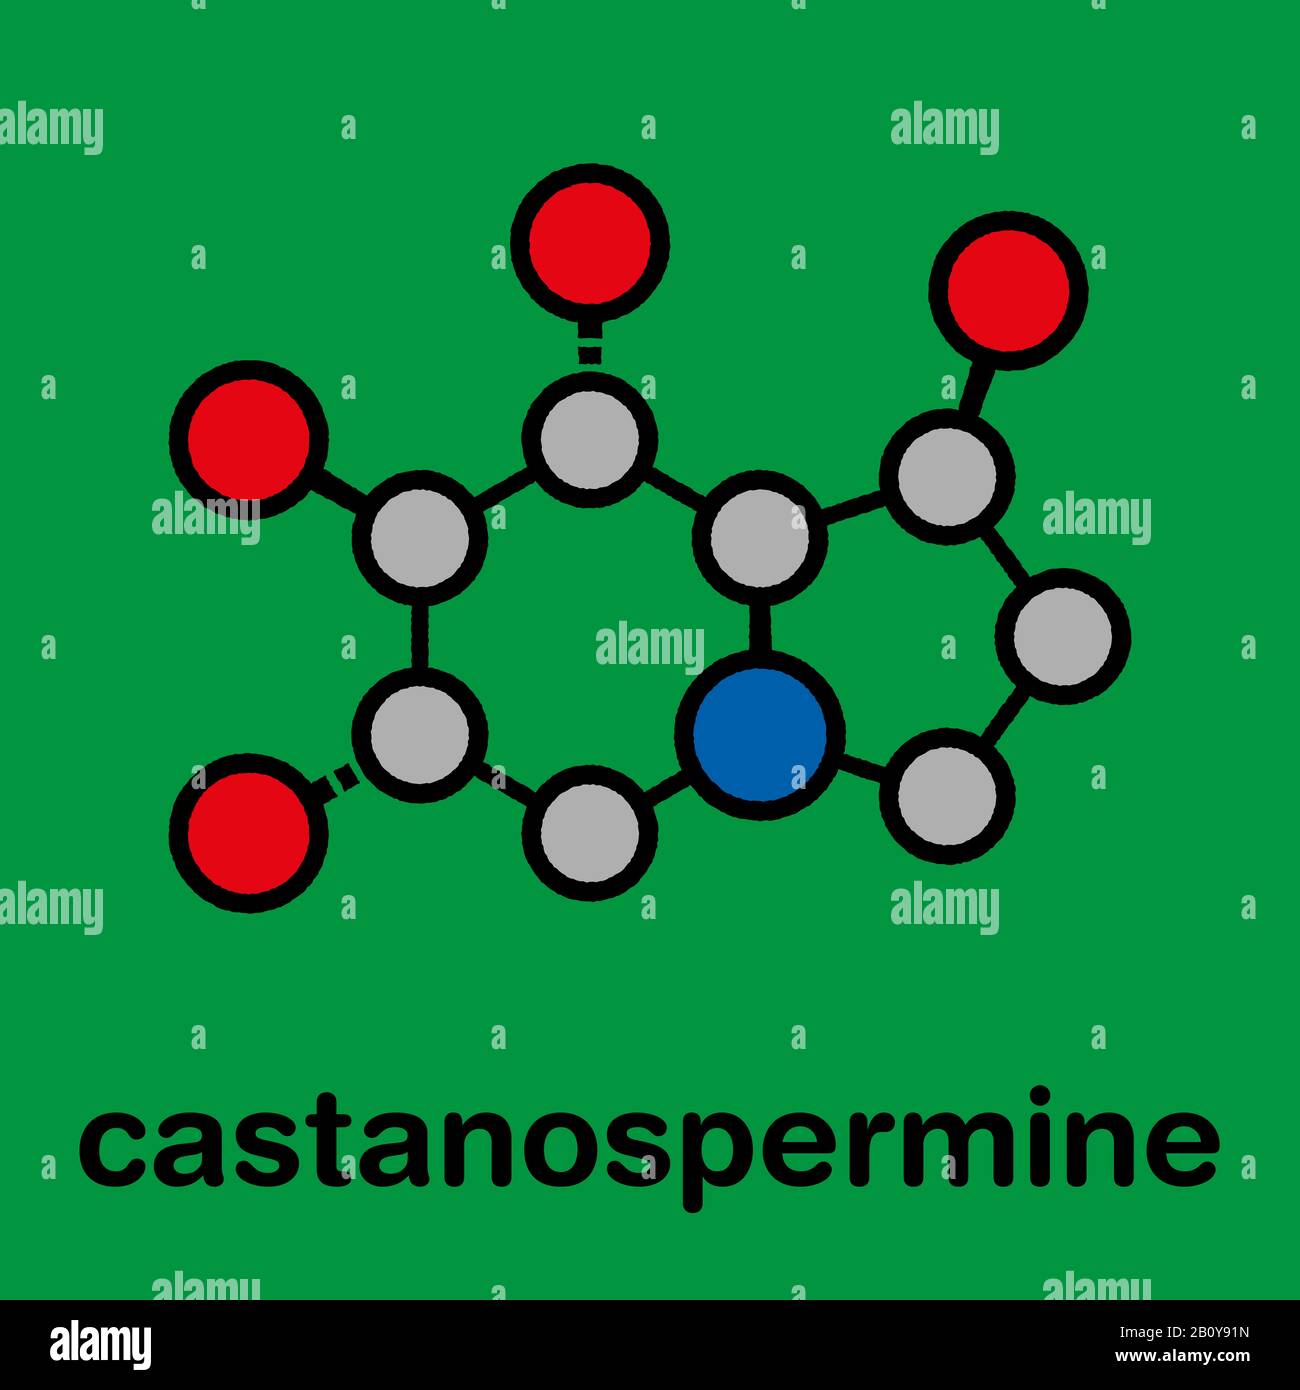 Castanospermine alkaloid molecule, illustration Stock Photo